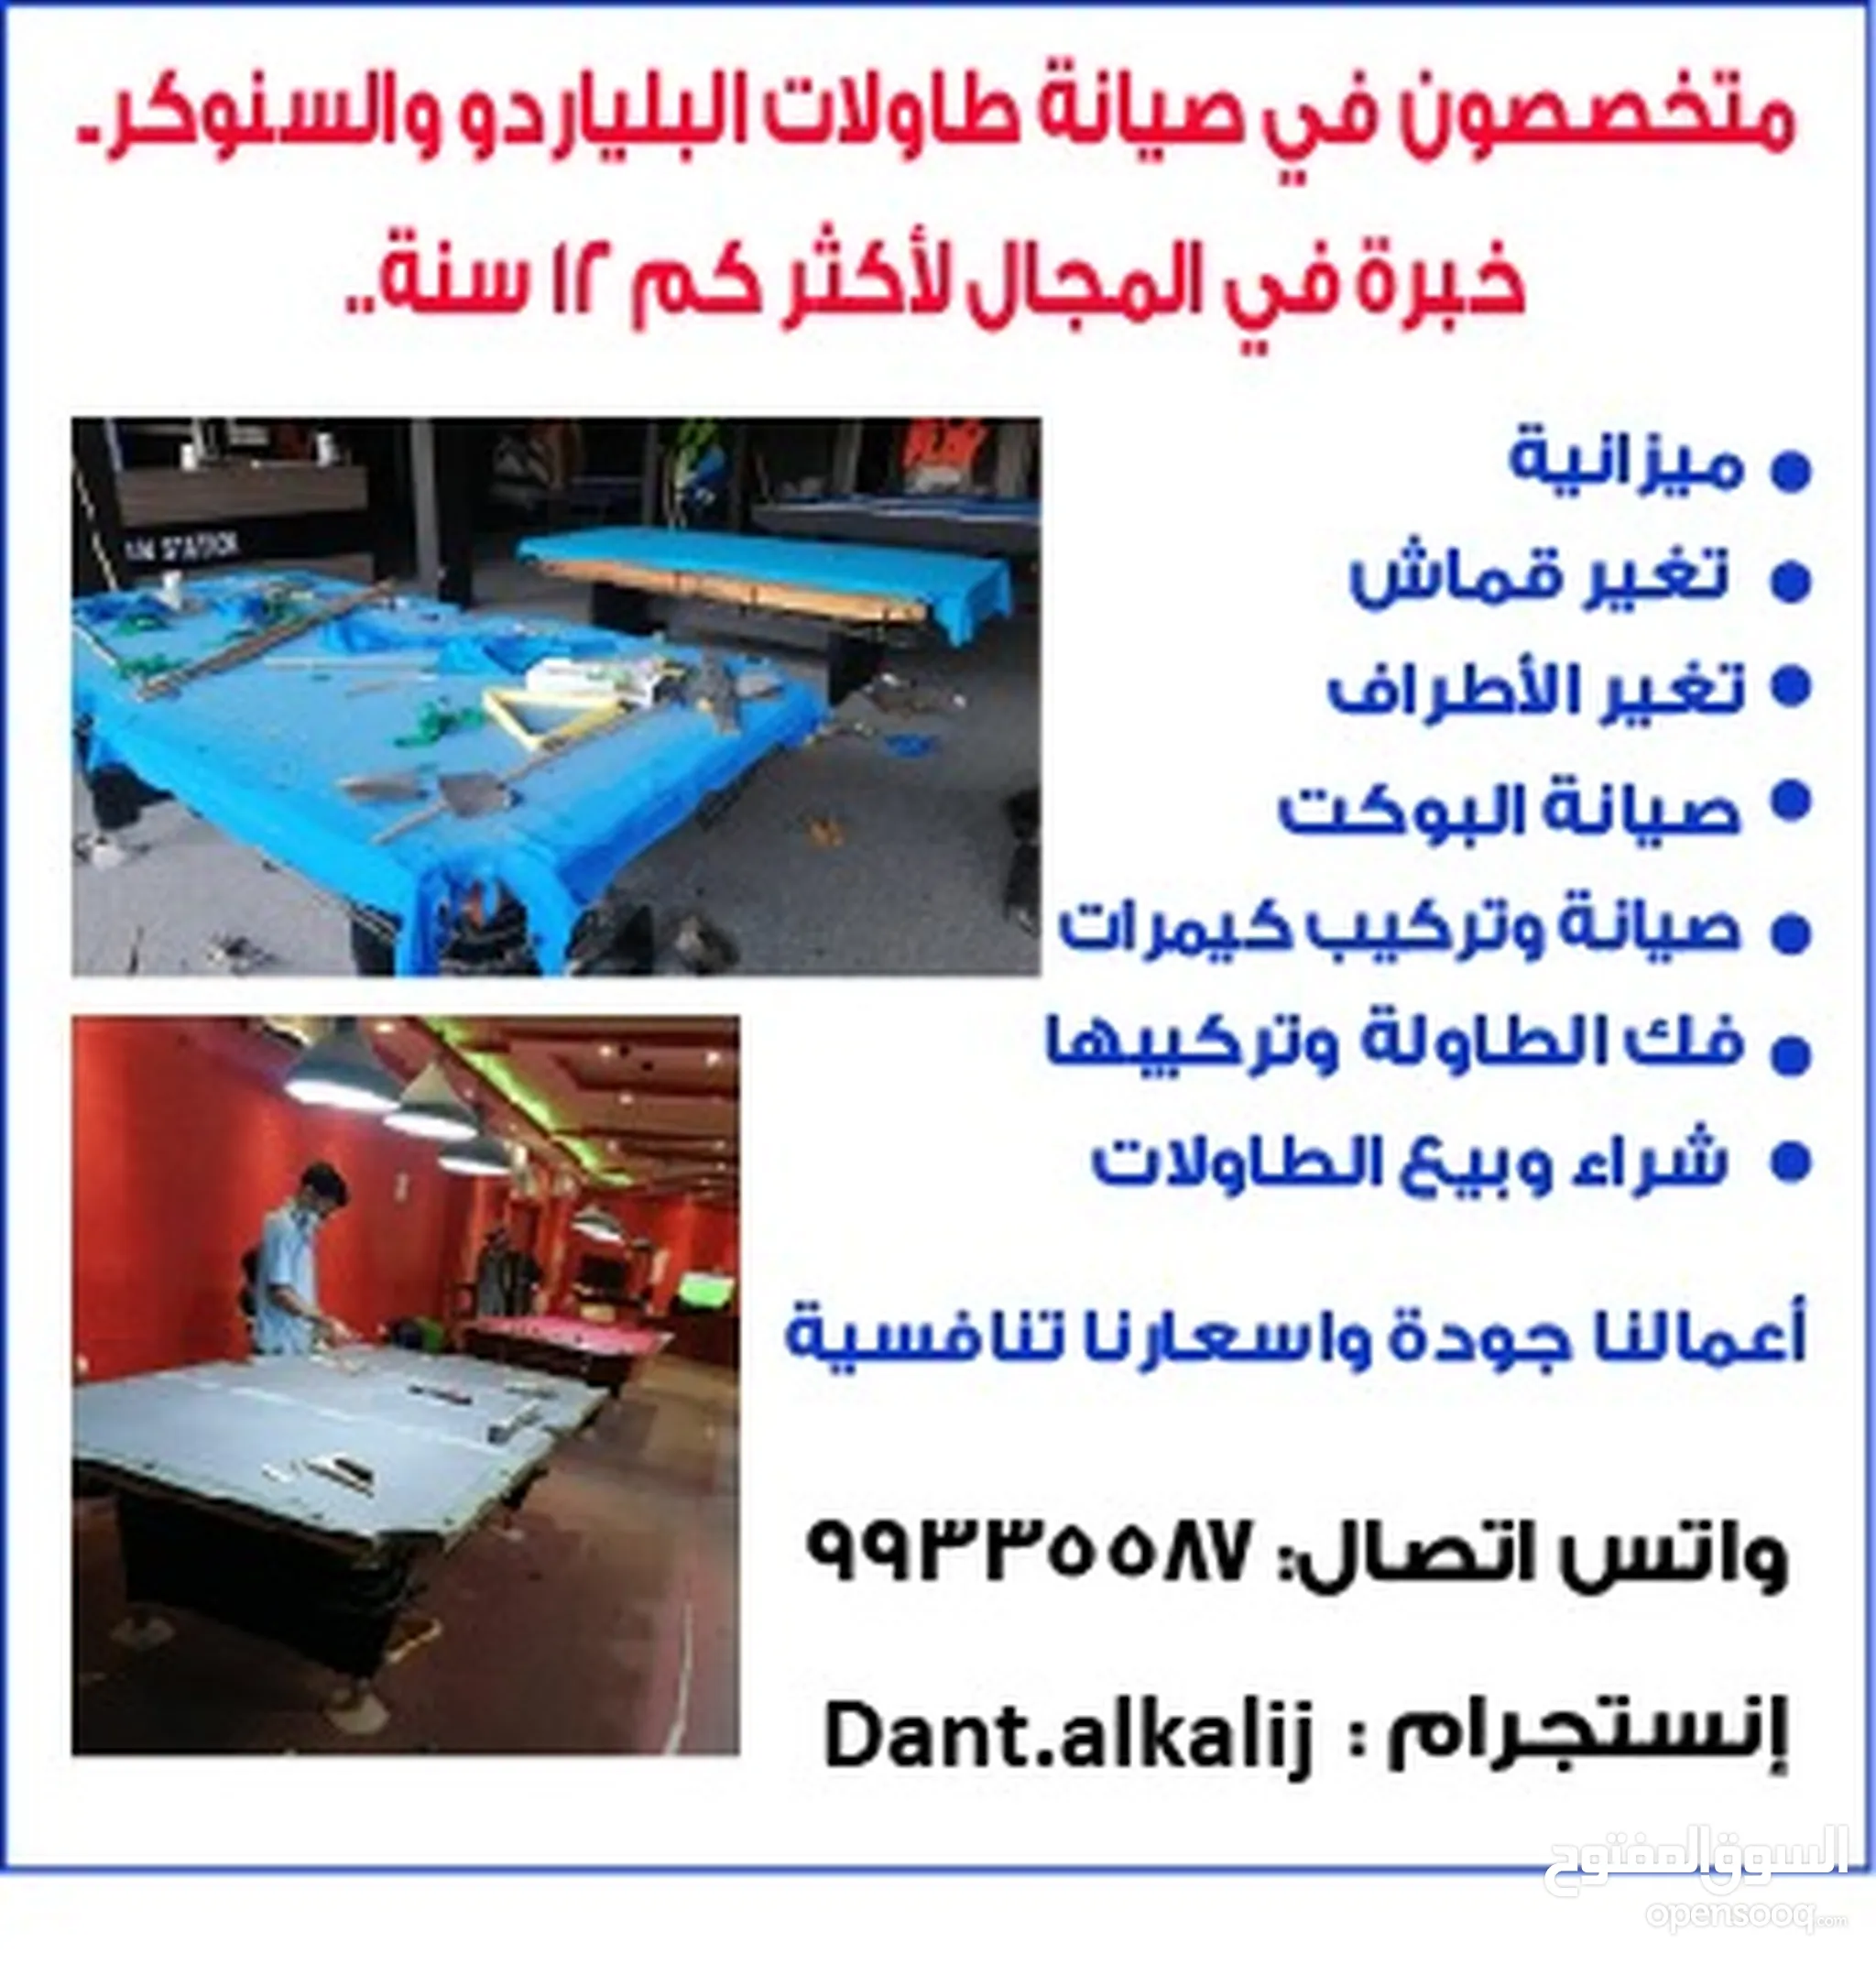 طاولة بلياردو وسنوكر للبيع في عُمان : عصا, كرة, مضرب, قفاز : افضل سعر |  السوق المفتوح